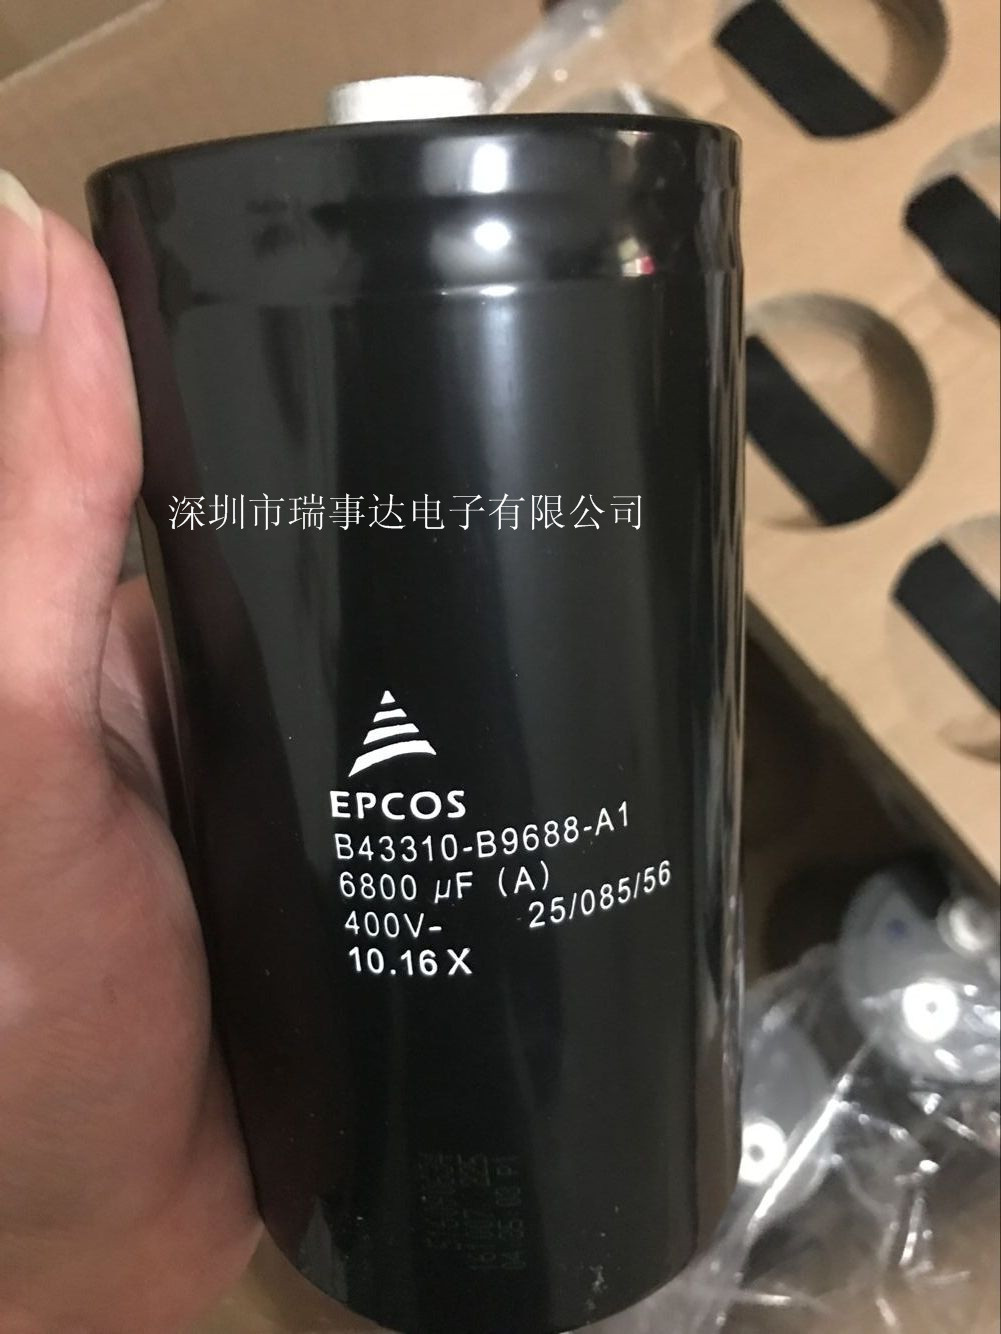 EPCOS B43310-B9688-A1电容器